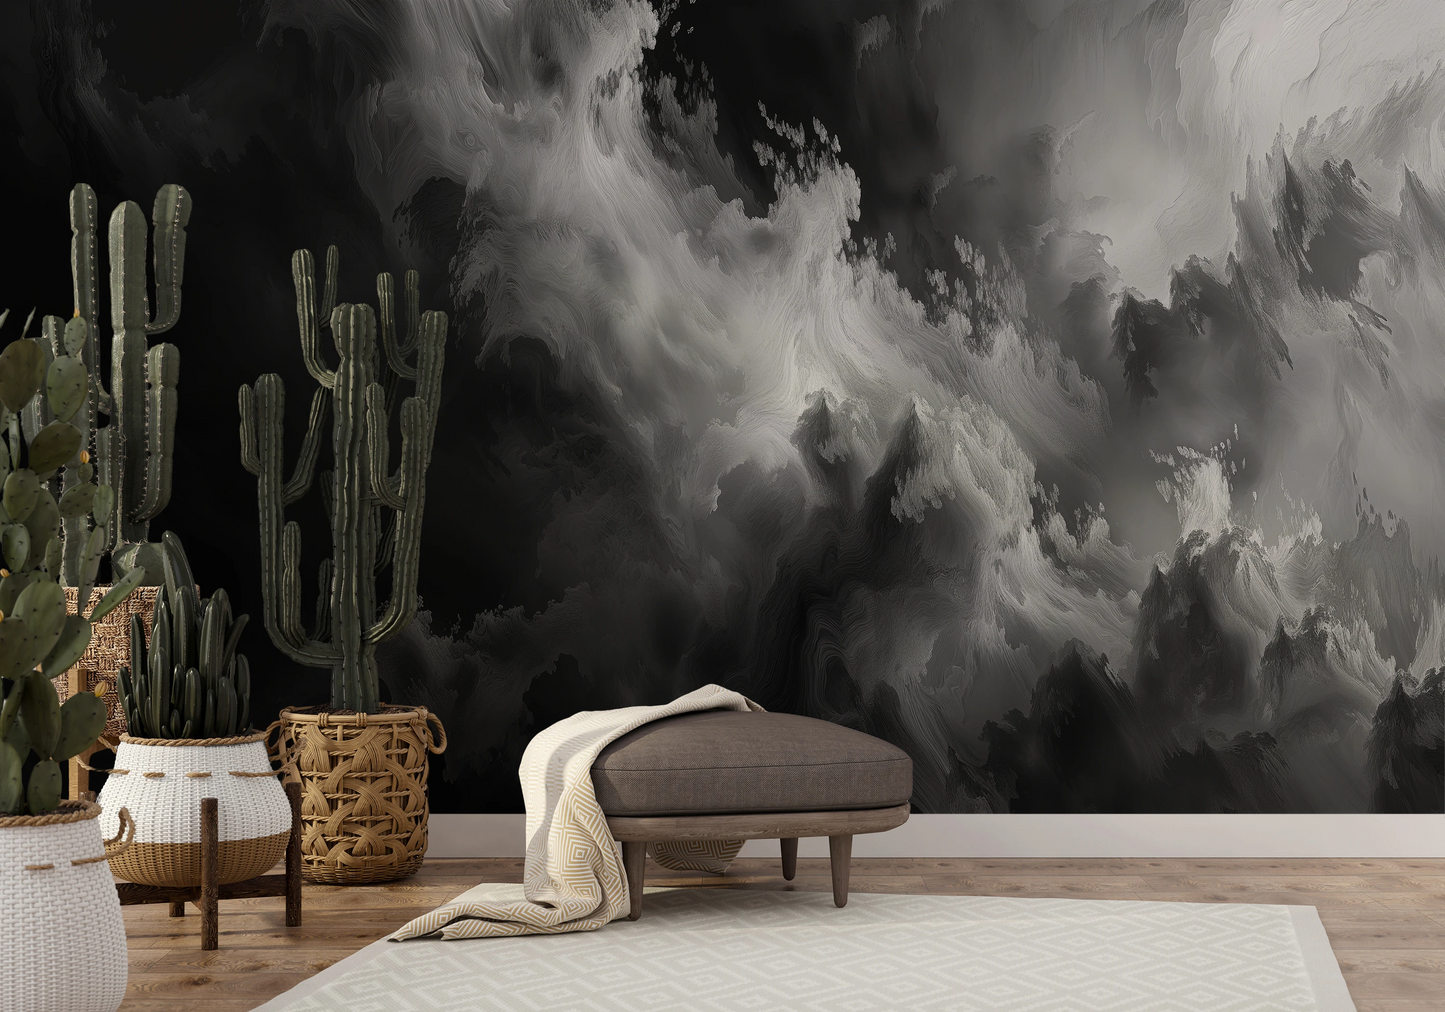 Wzór fototapety malowanej o nazwie Abstract Storm pokazanej w aranżacji wnętrza.